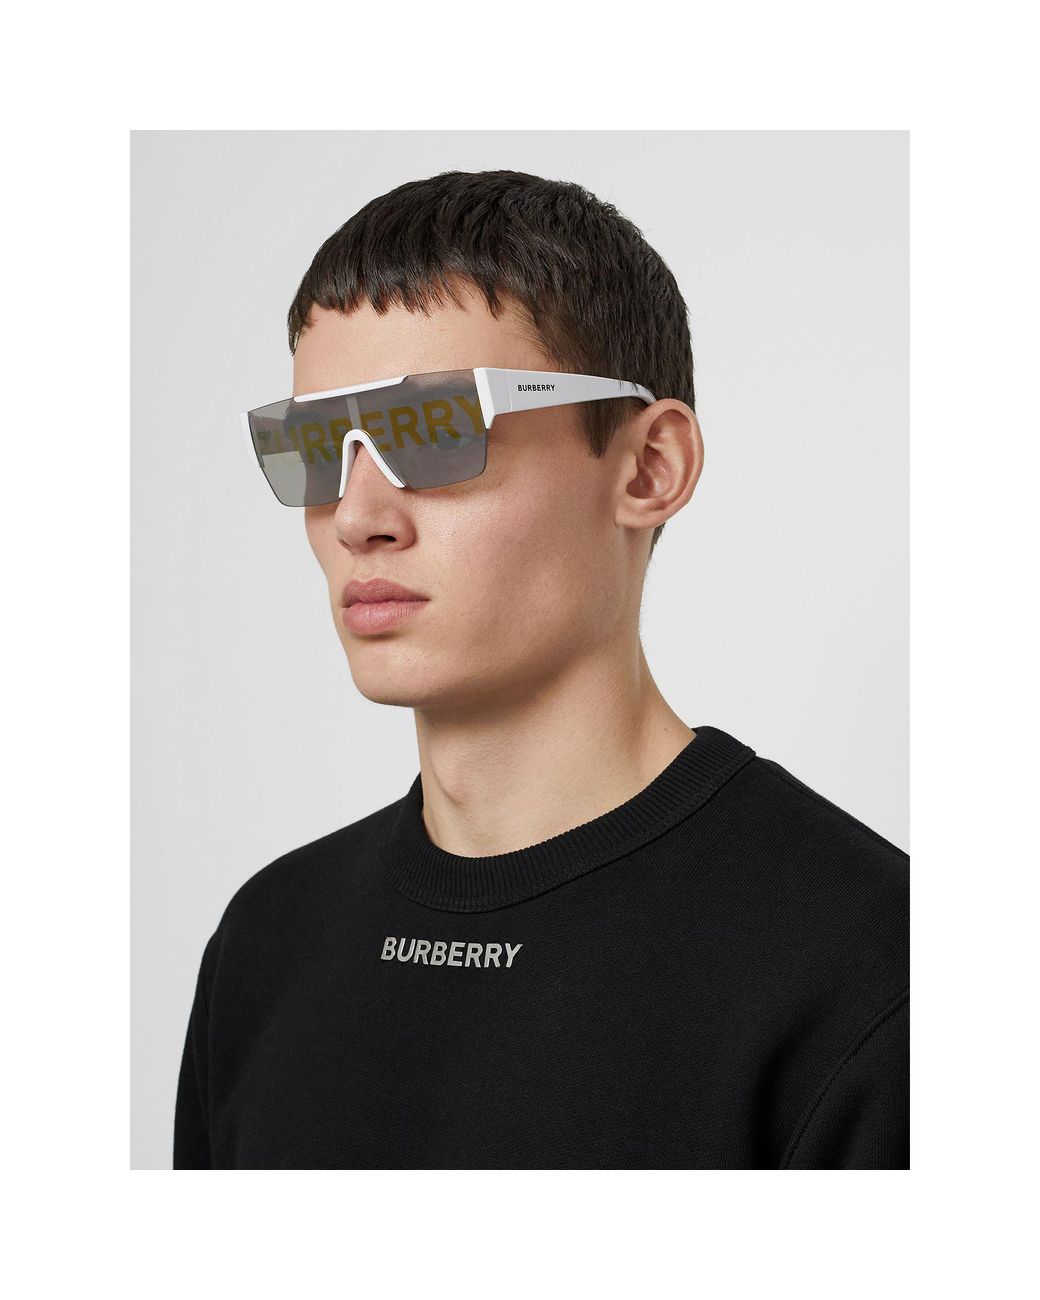 Actualizar 64+ imagen burberry logo lens sunglasses